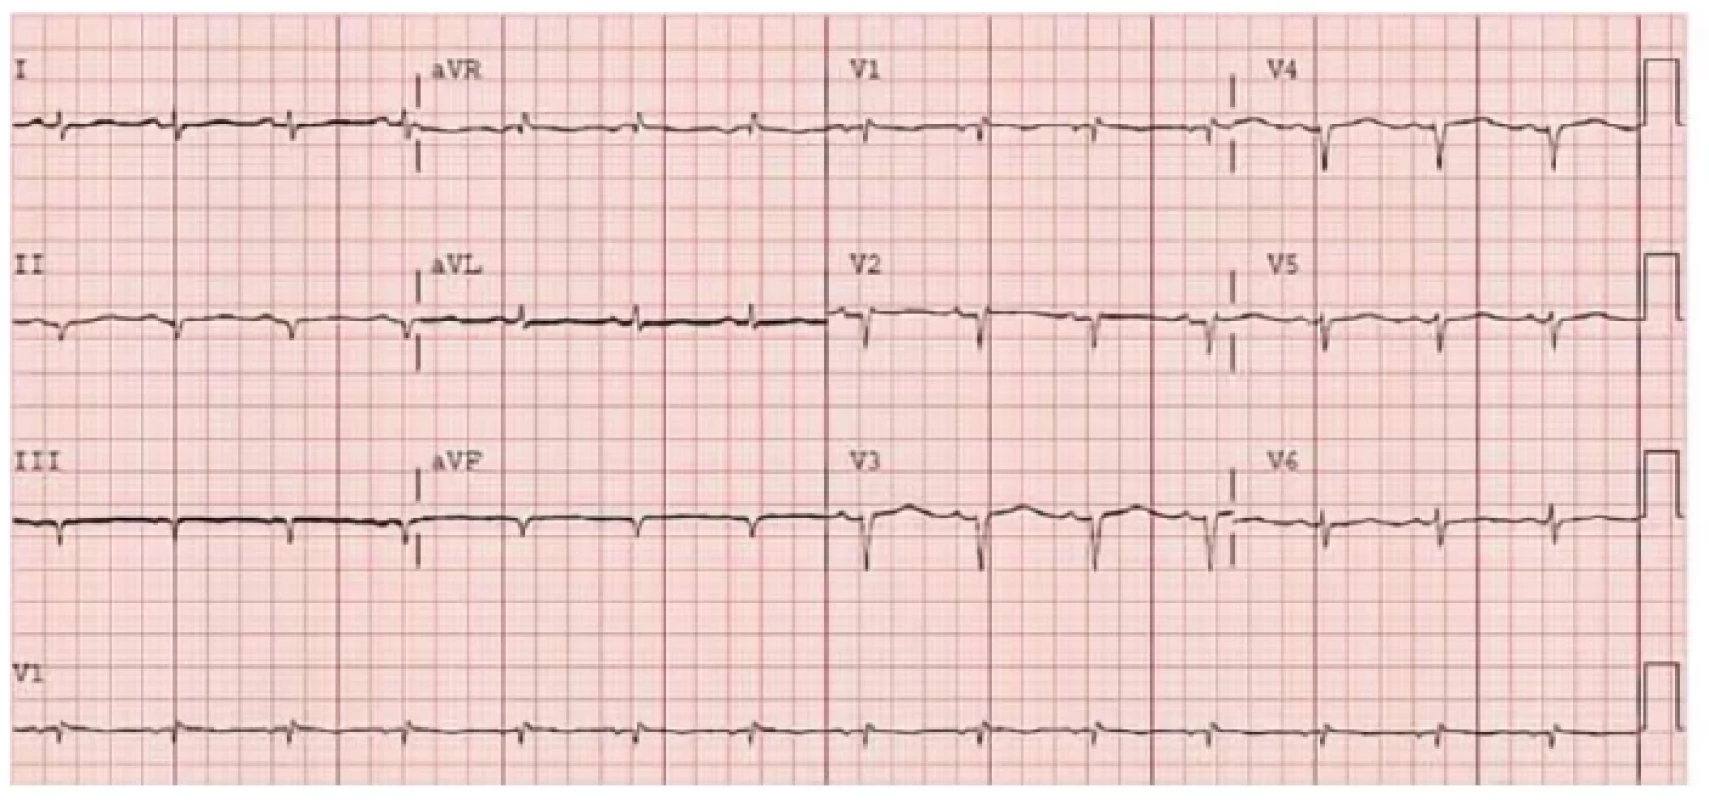 EKG křivka nemocného se srdeční amyloidózou. Patrná je nízká voltáž QRS komplexů a pseudoinfarktové změny